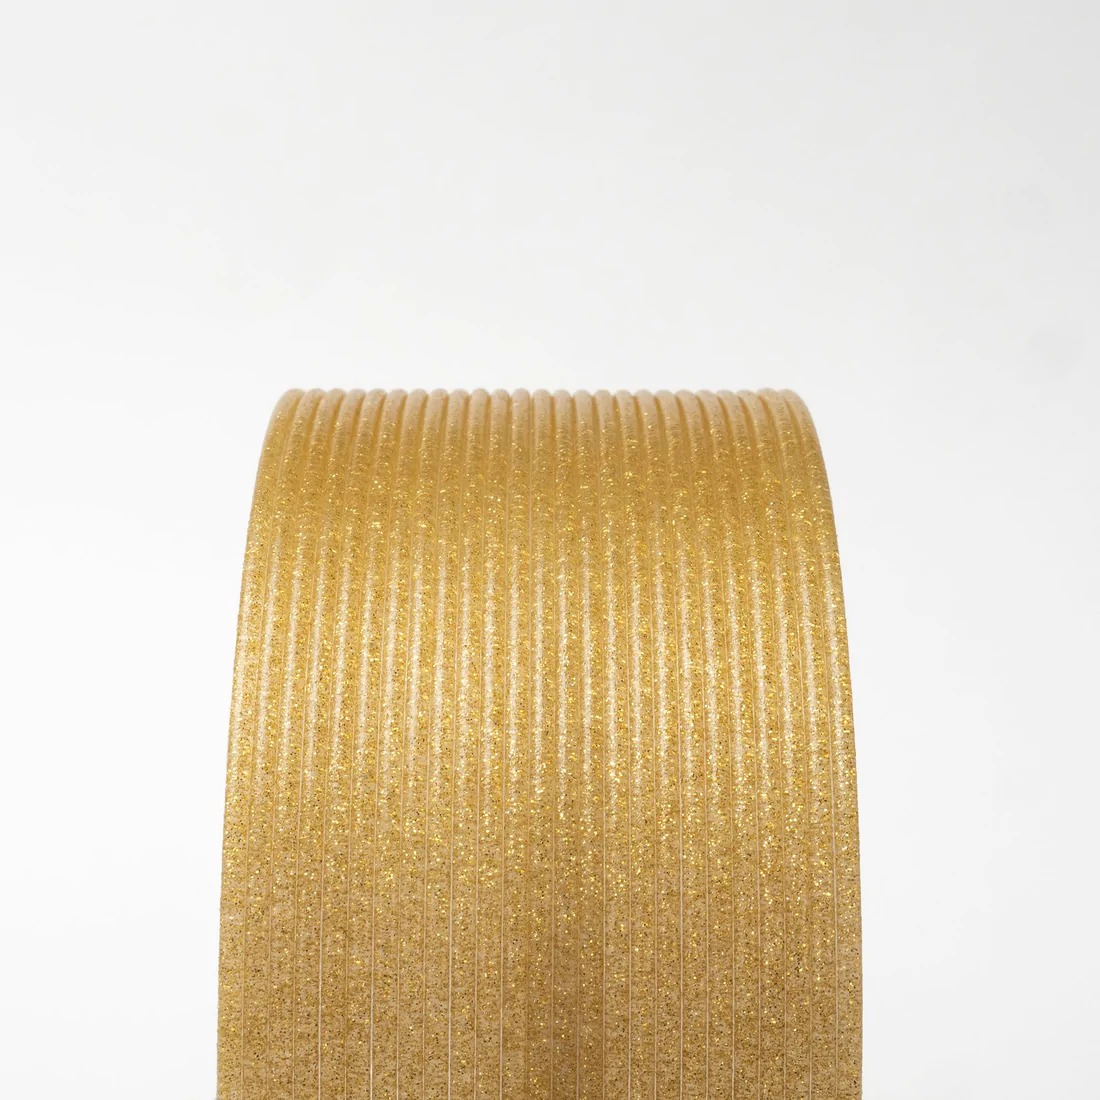 Gold Dust HTPLA  Proto pasta 2.85mm 3D FilaPrint filament